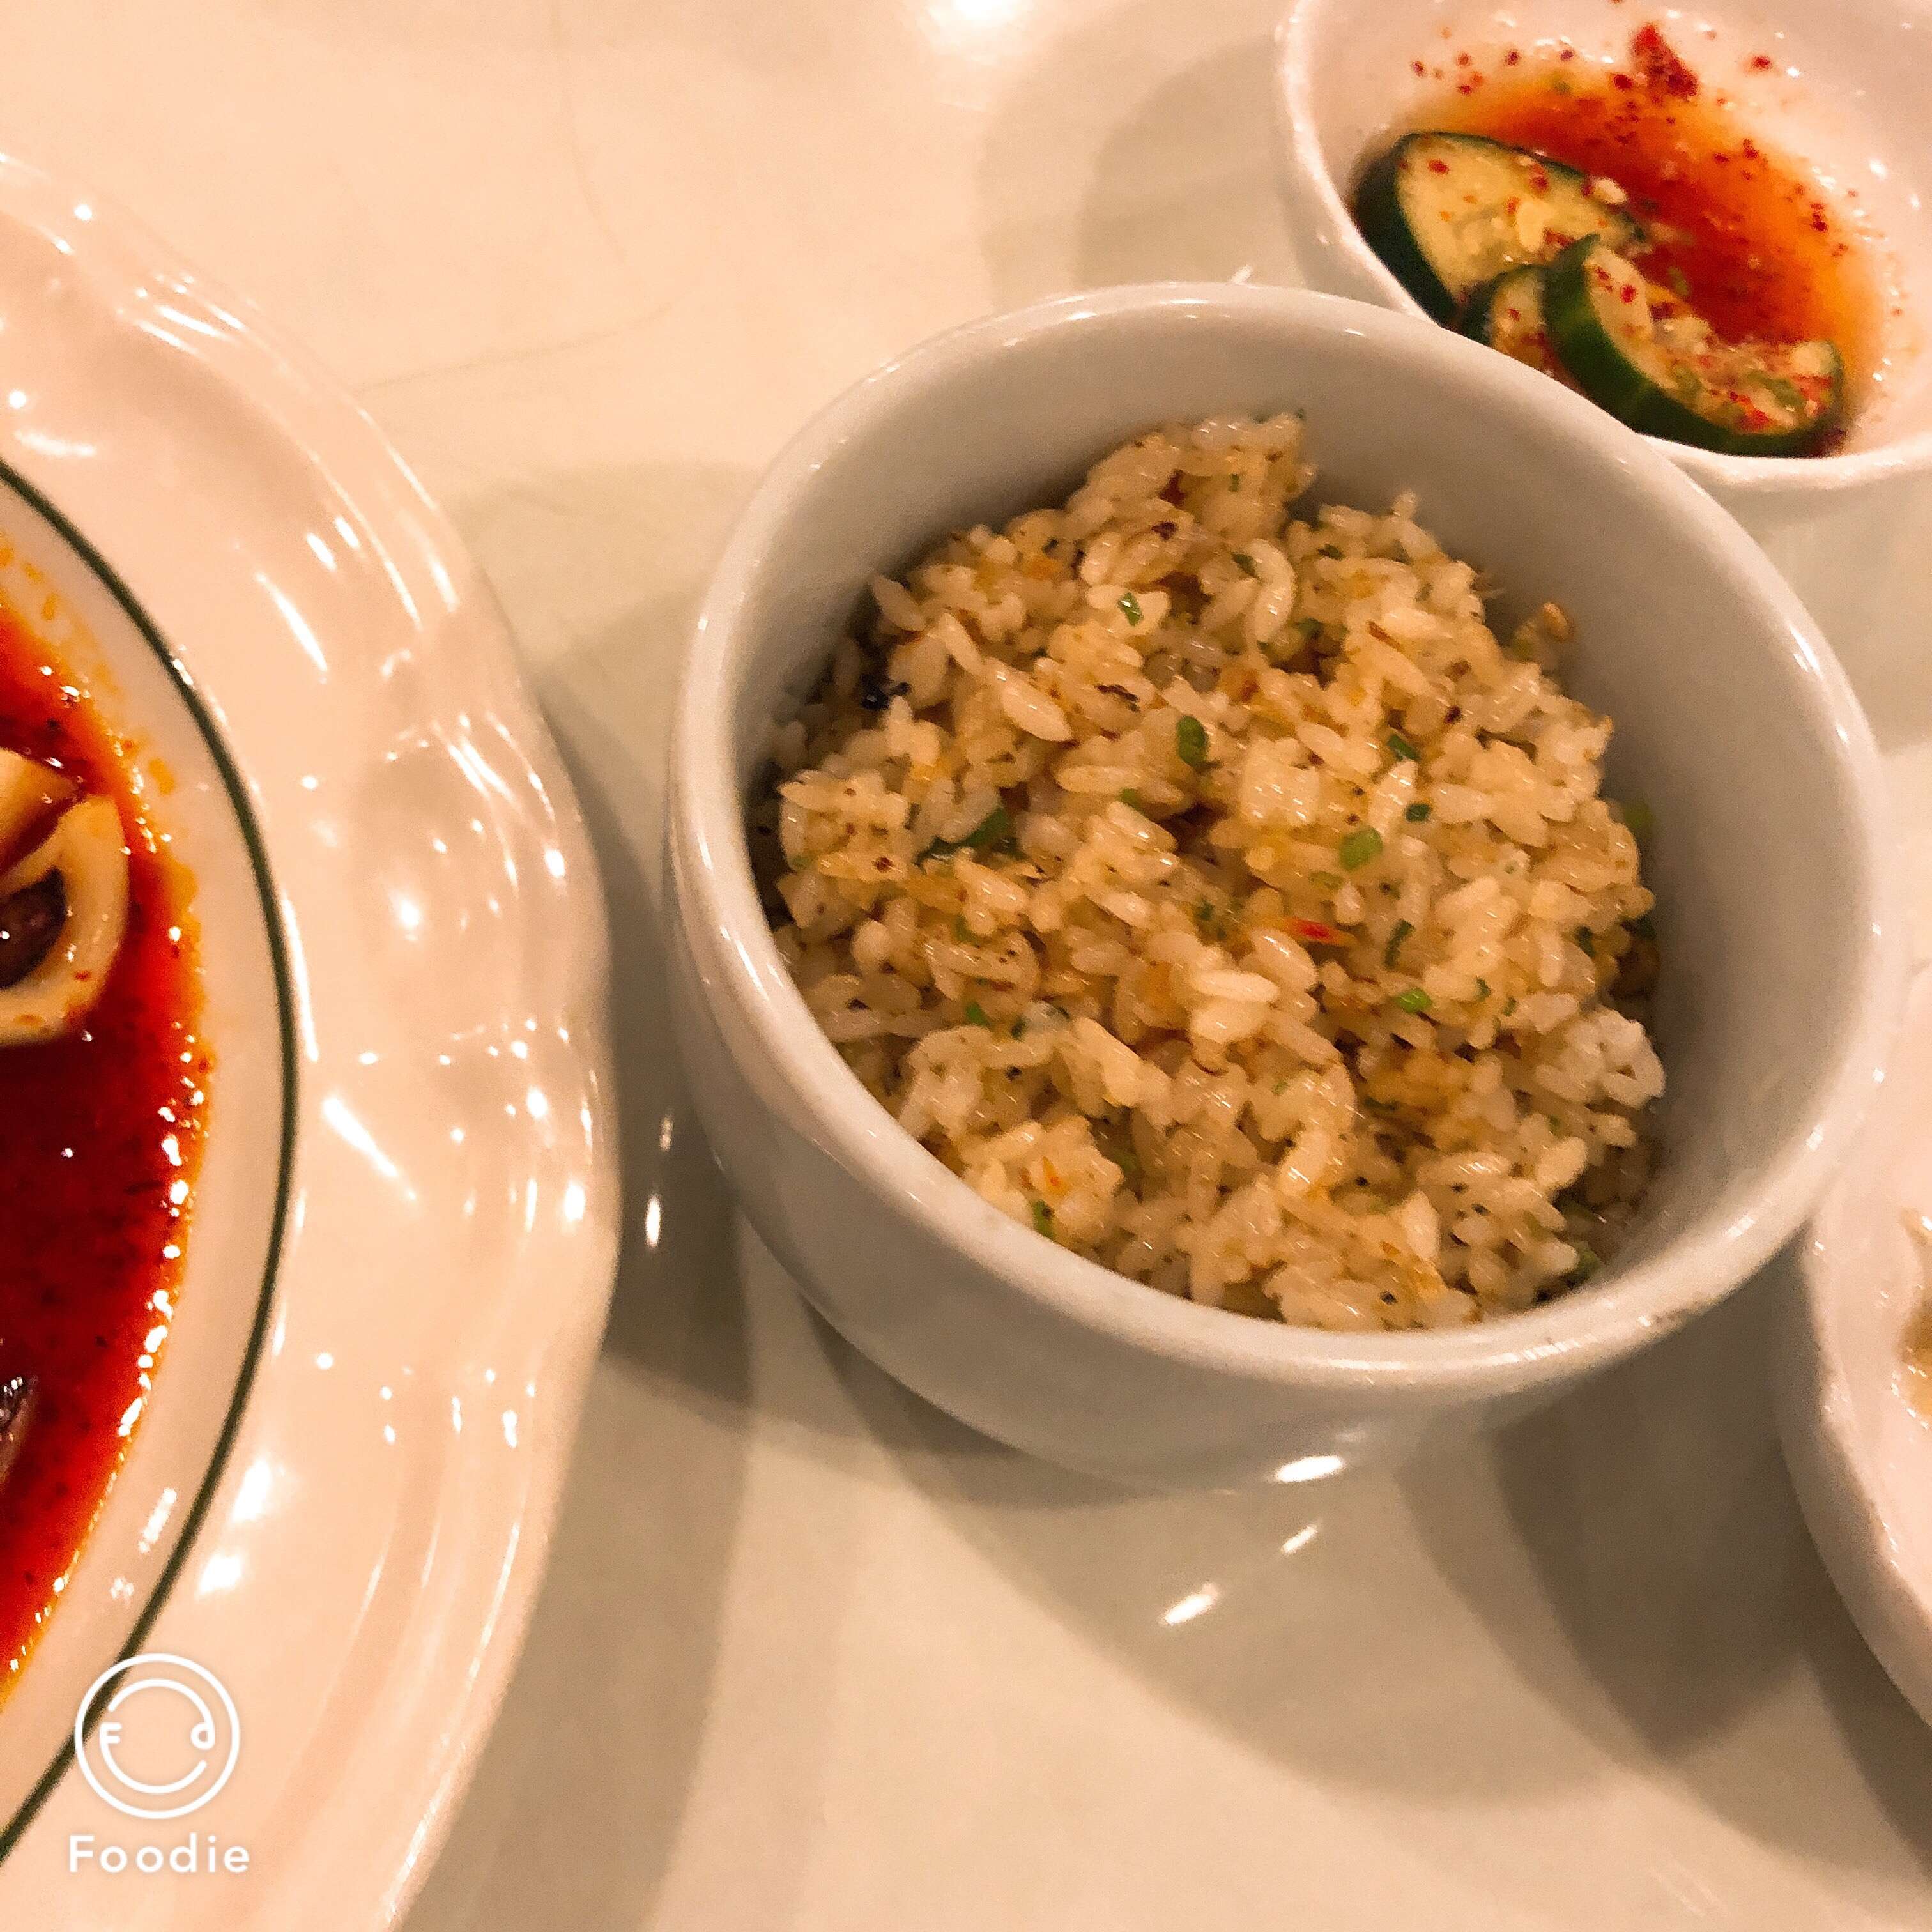 Allison S Review For Korea Garden Restaurant Bel Air Makati City